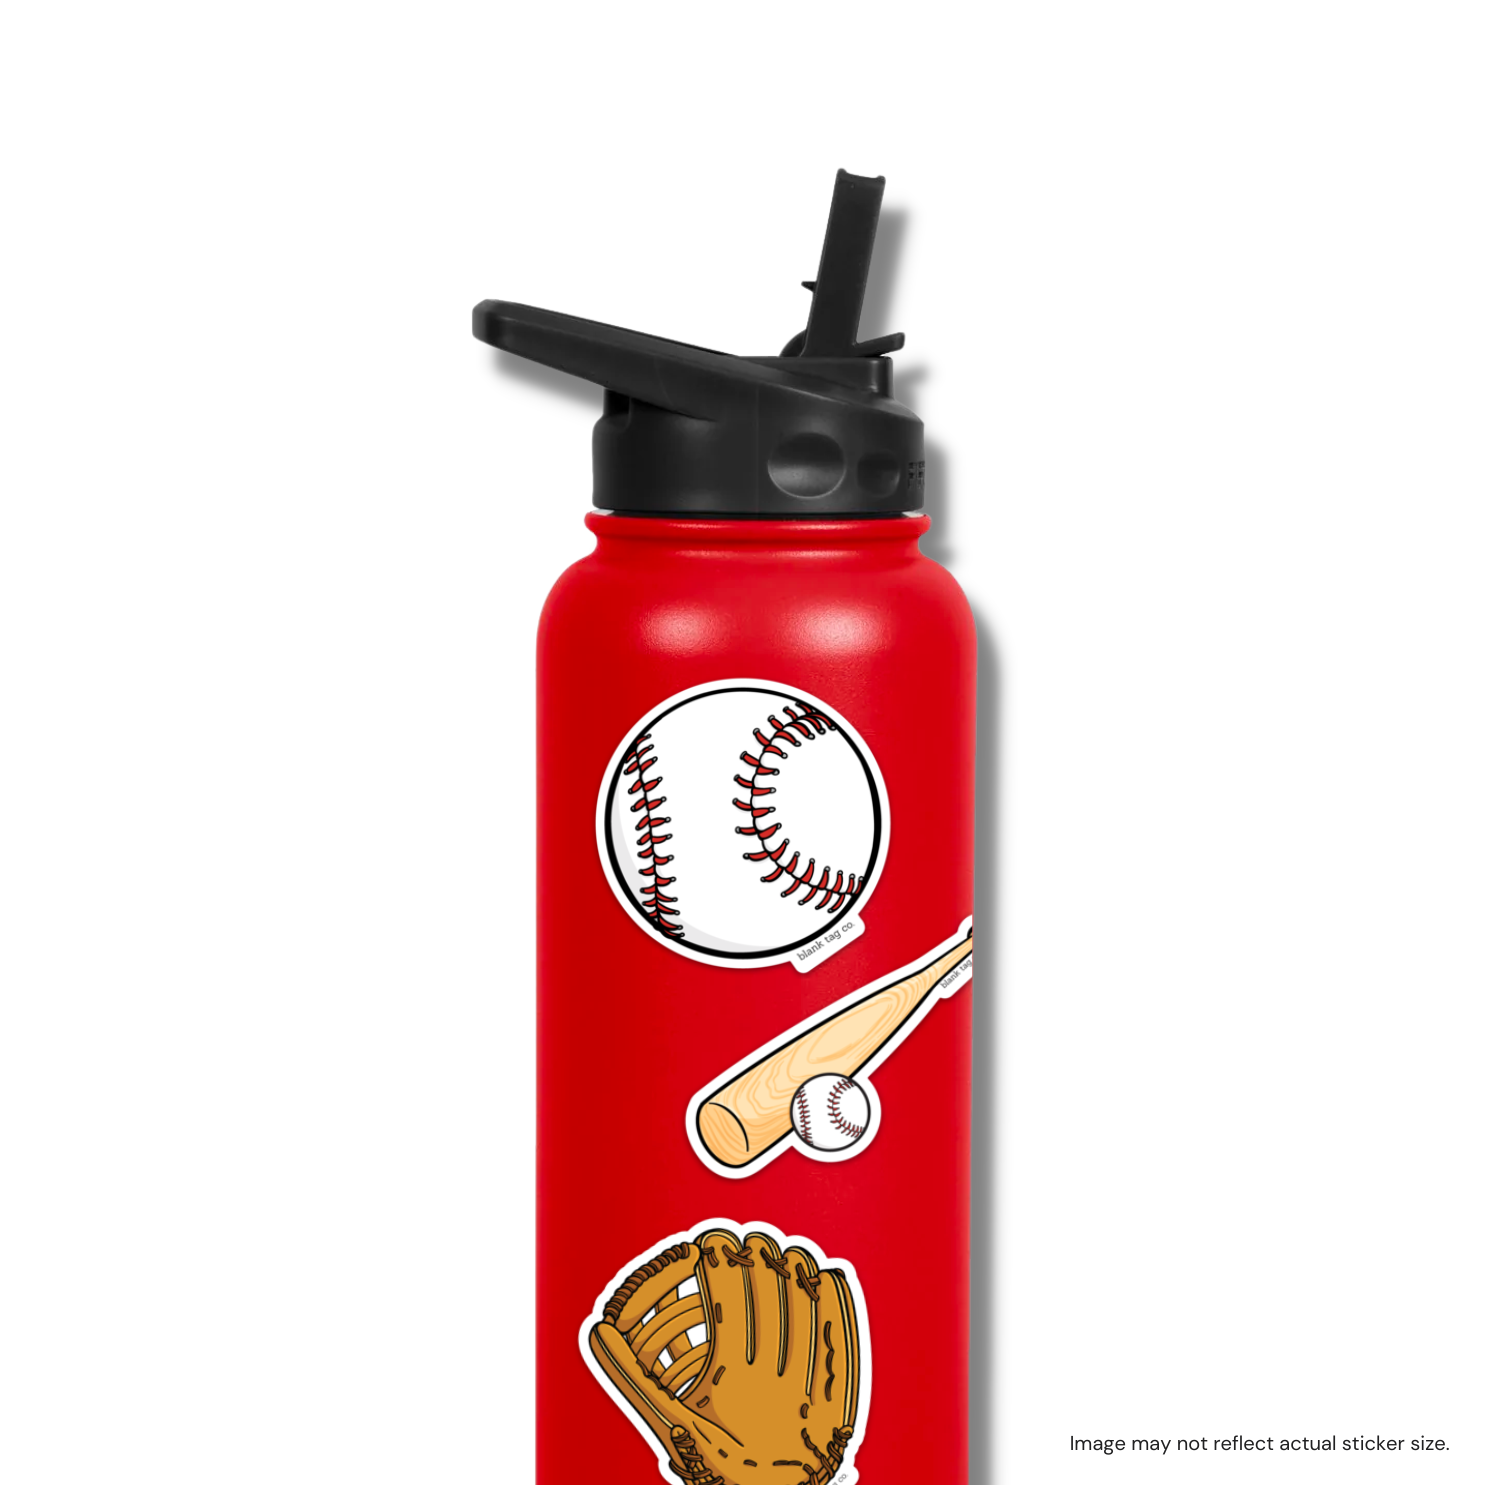 The Baseball Mitt Sticker